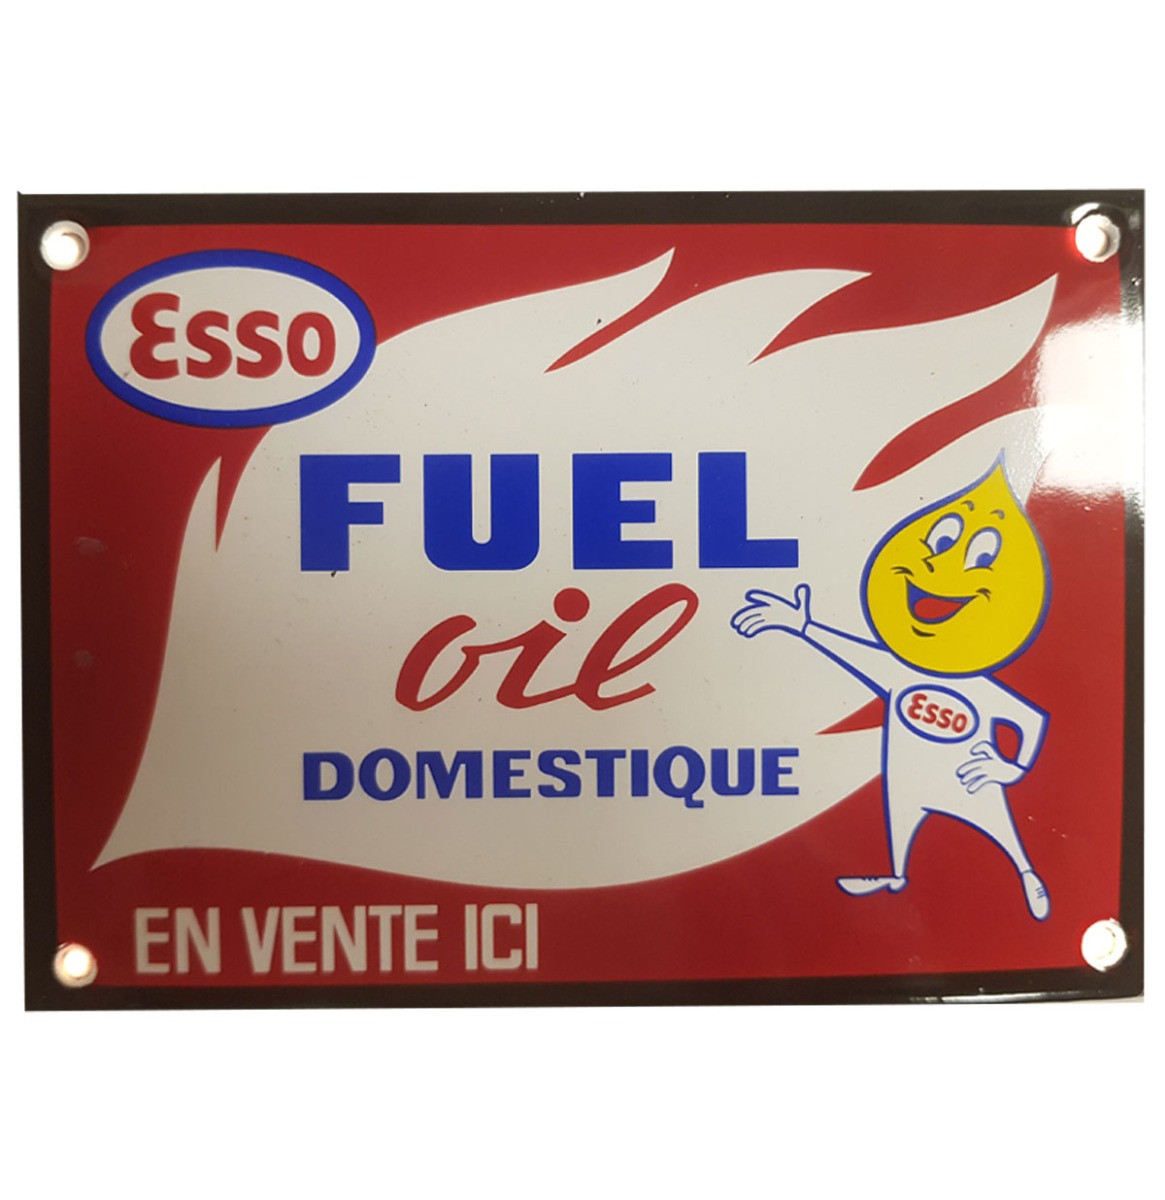 Esso Fuel Oil Domestique Emaille Bord - 15 x 11 cm